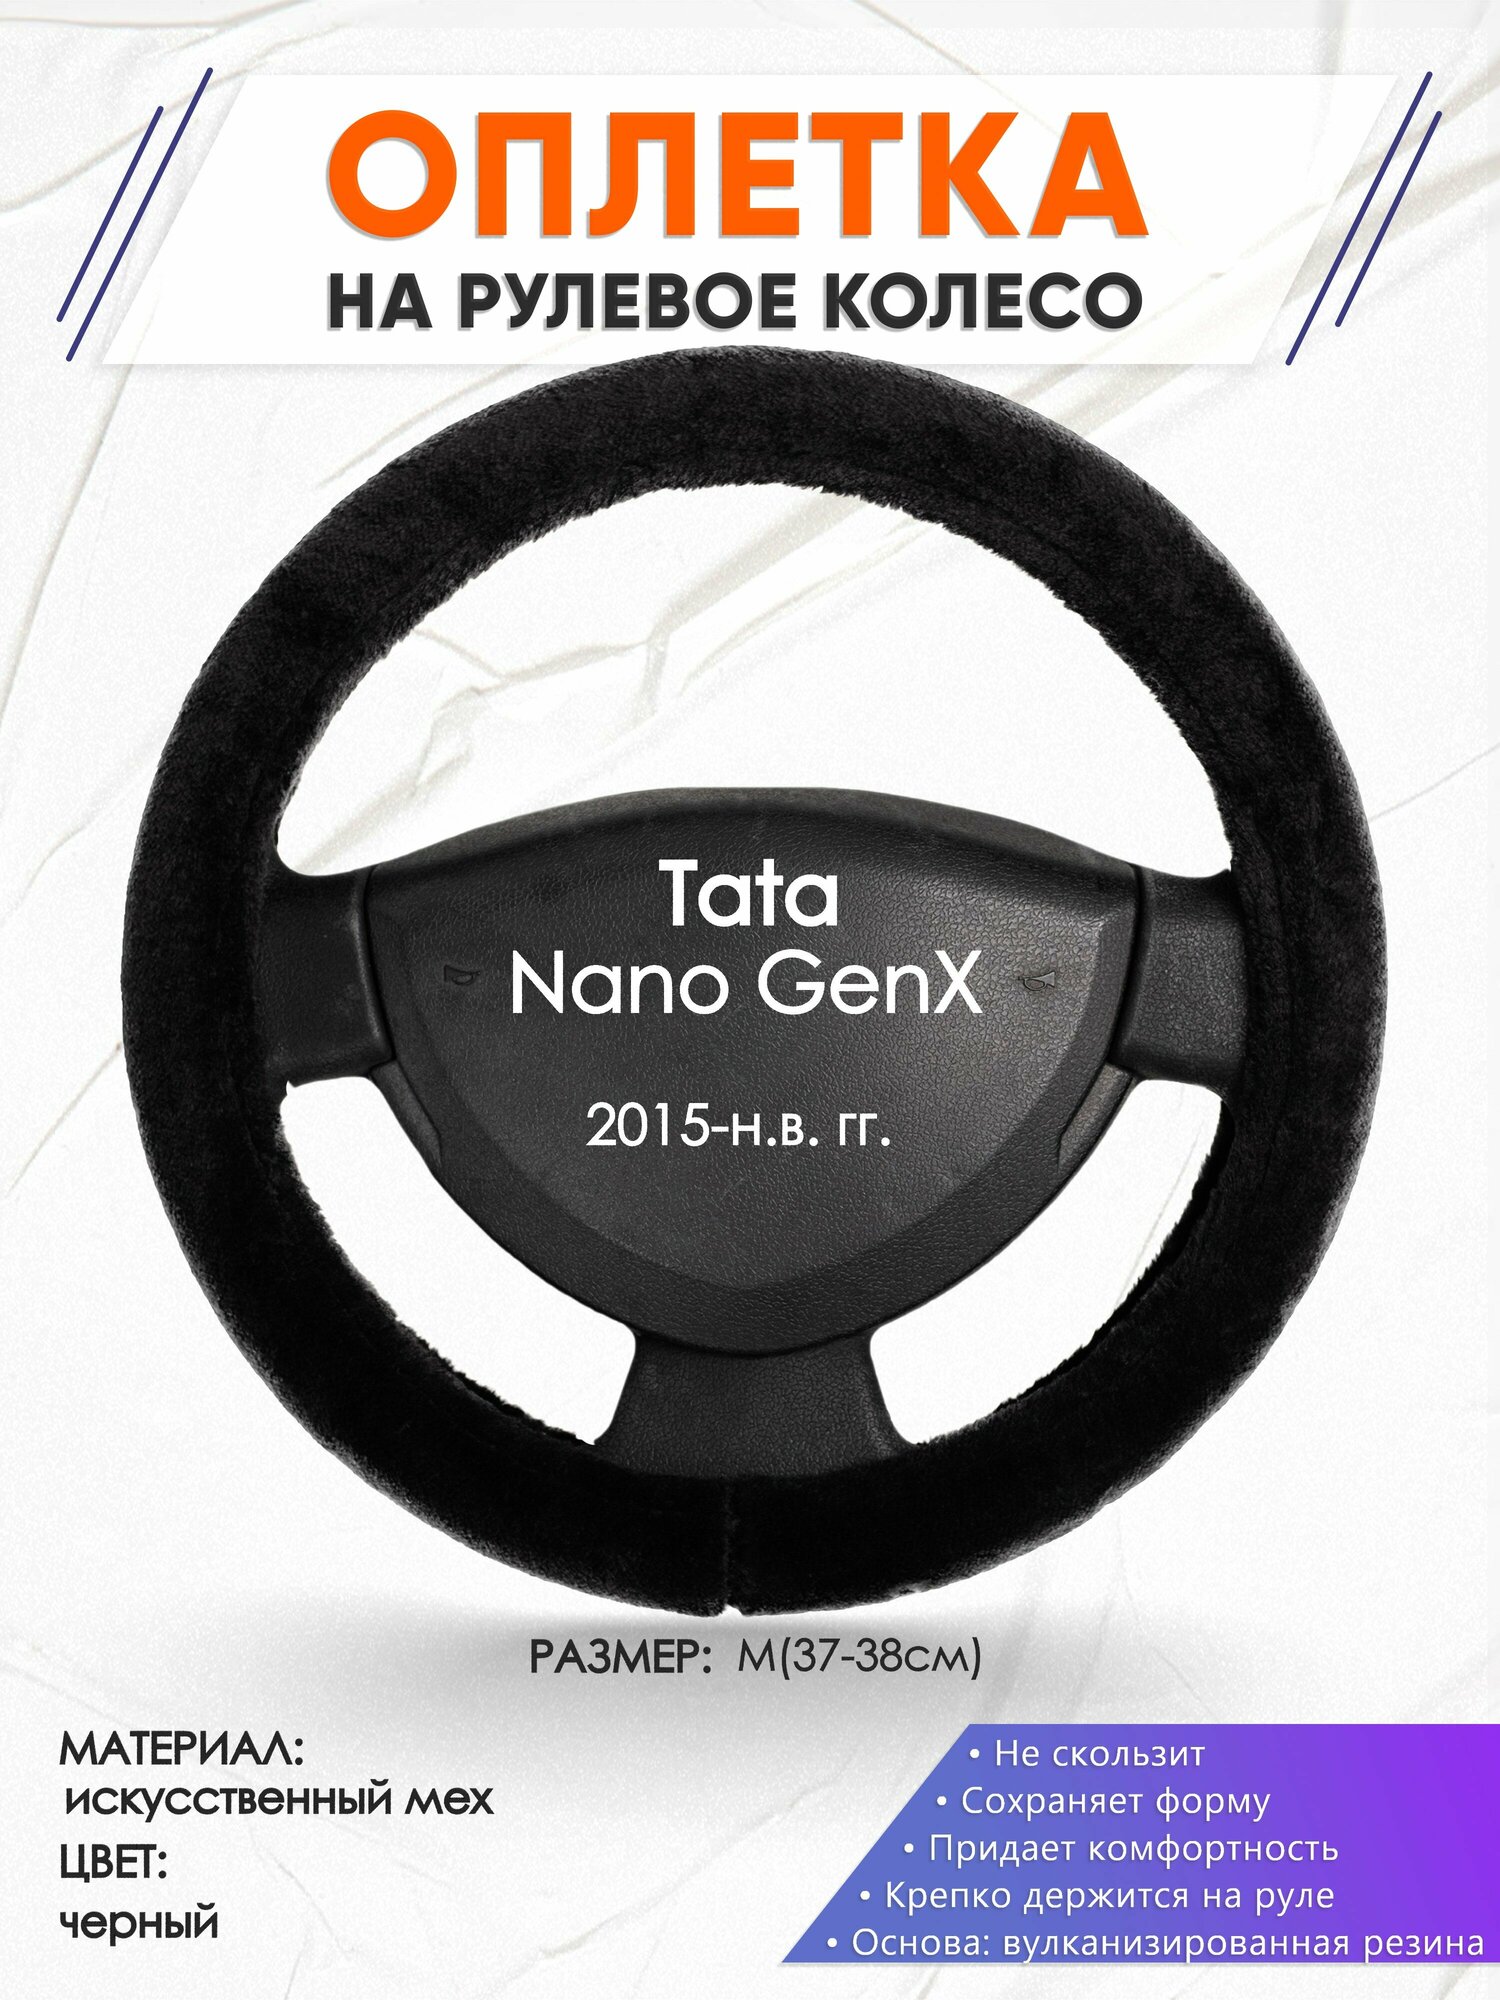 Оплетка наруль для Tata Nano GenX(Тата Нано Ген Икс) 2015-н. в. годов выпуска, размер M(37-38см), Искусственный мех 45